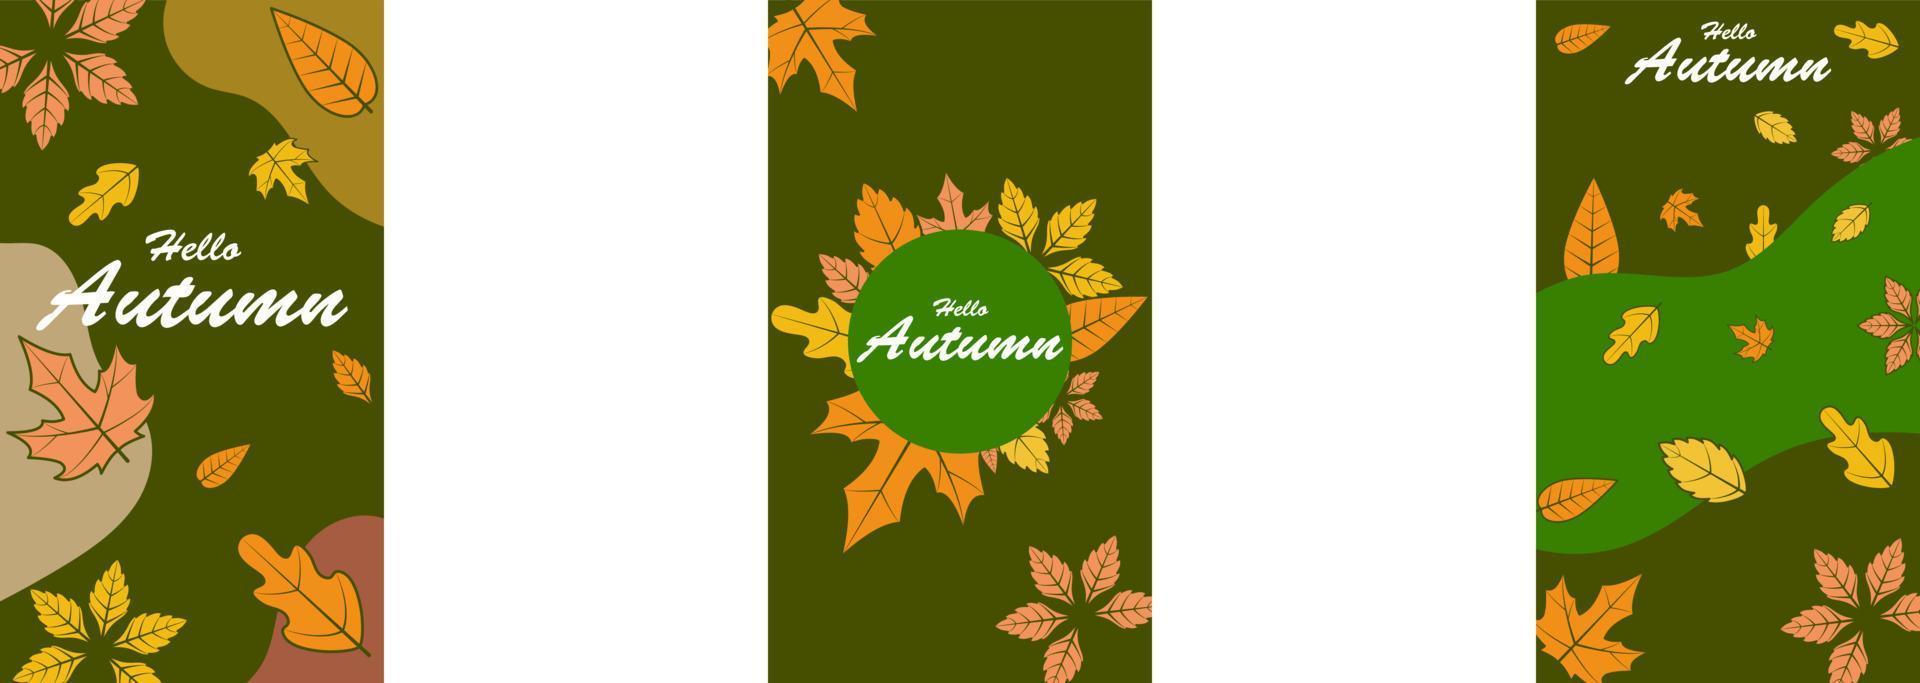 conjunto de fundos abstratos de outono para histórias de mídia social. banners coloridos com folhas caídas de outono e folhagem amarelada. usar para convite de evento, voucher de desconto, publicidade. vetor eps 10